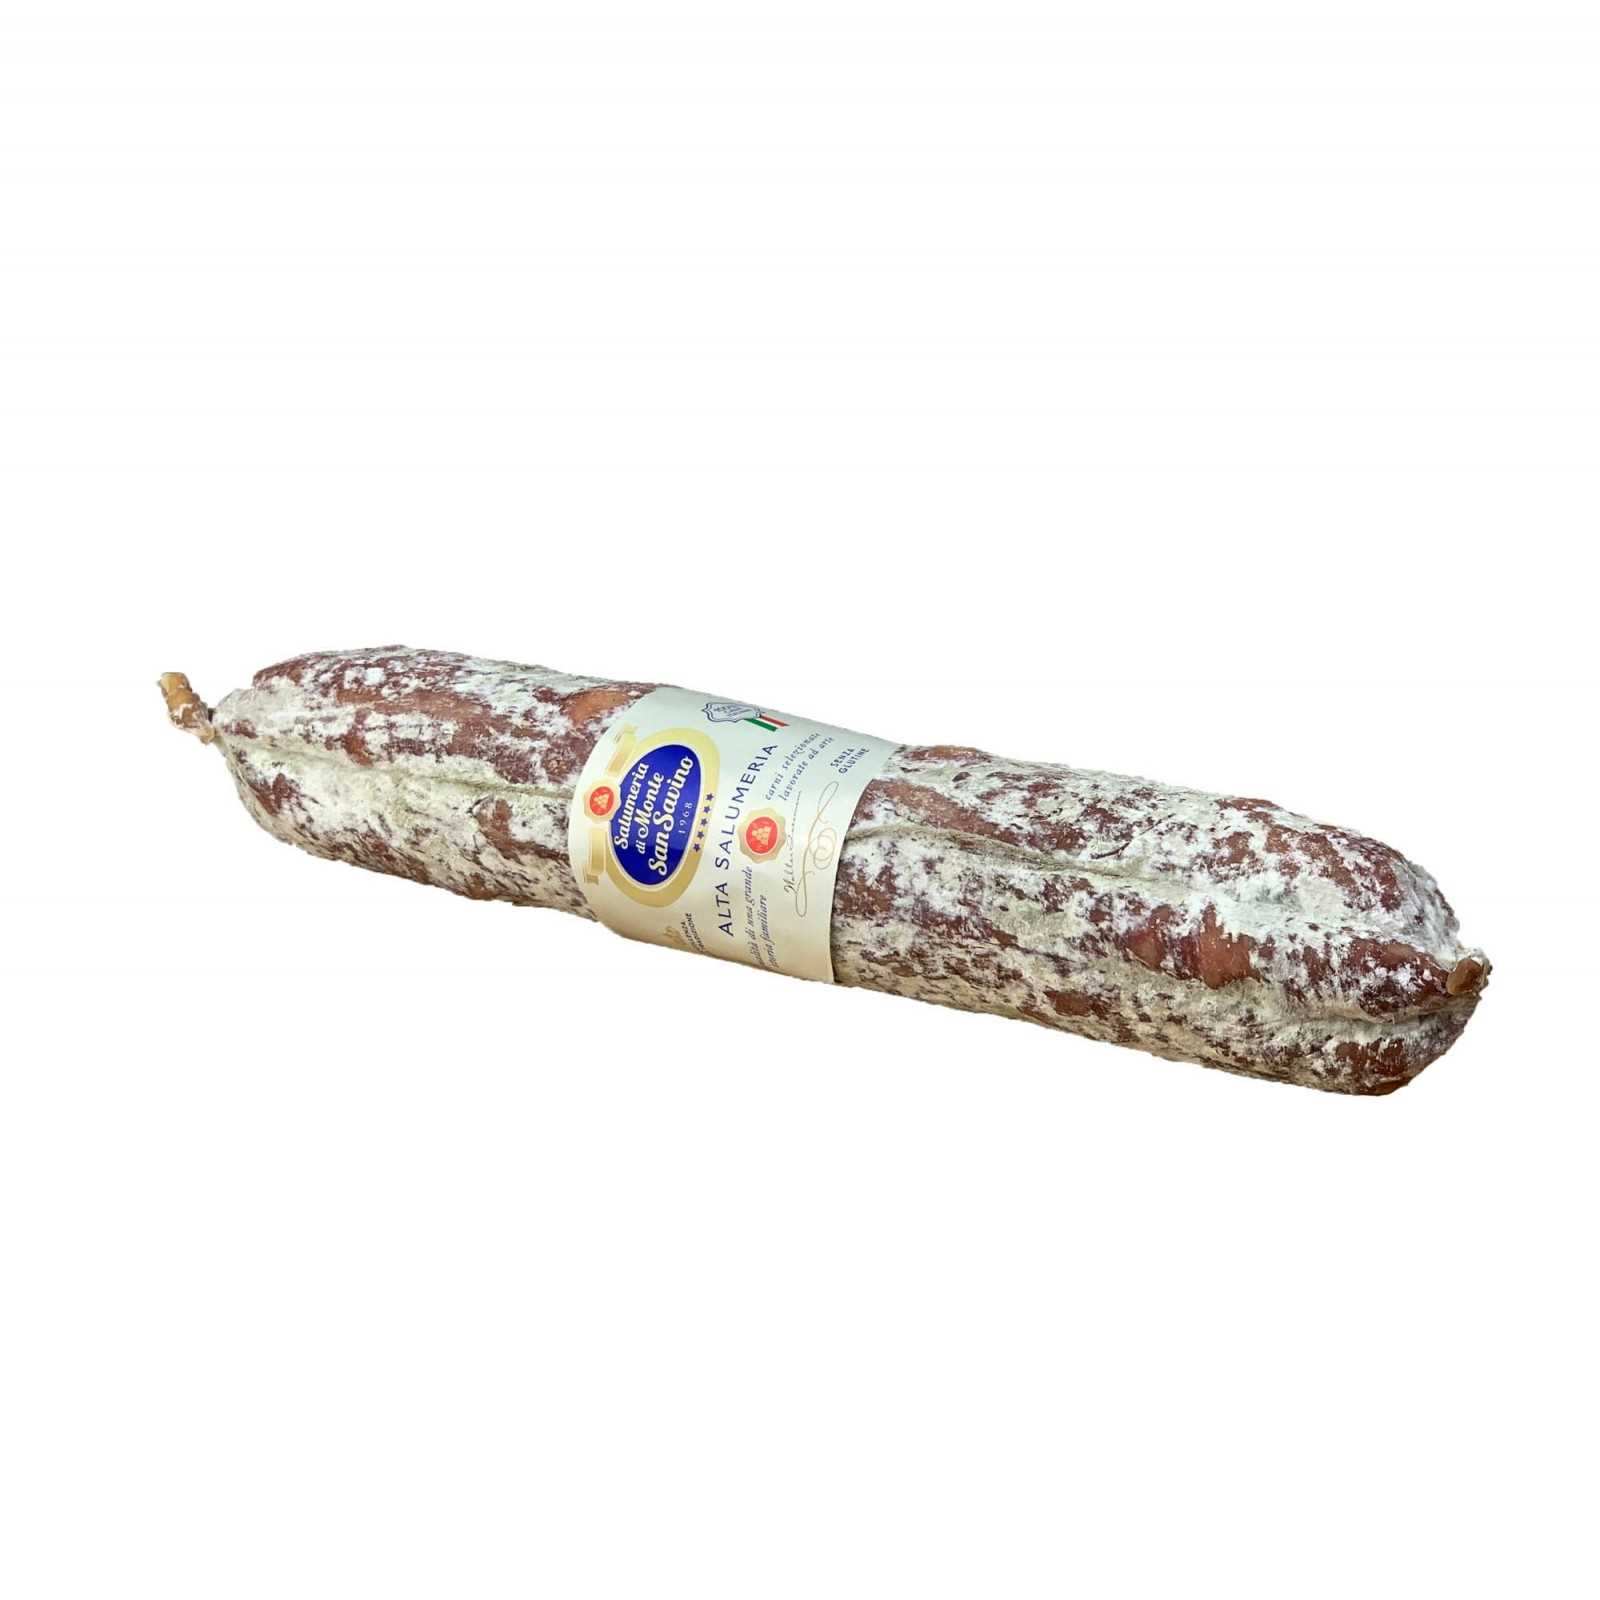 Toskanische Salami, ein Klassiker der Tradition. Diese Version von Toskanische Salami hat ein Nettogewicht von ca. 500 g und ist Im Ganzen Stück In Naturdarm verpackt.